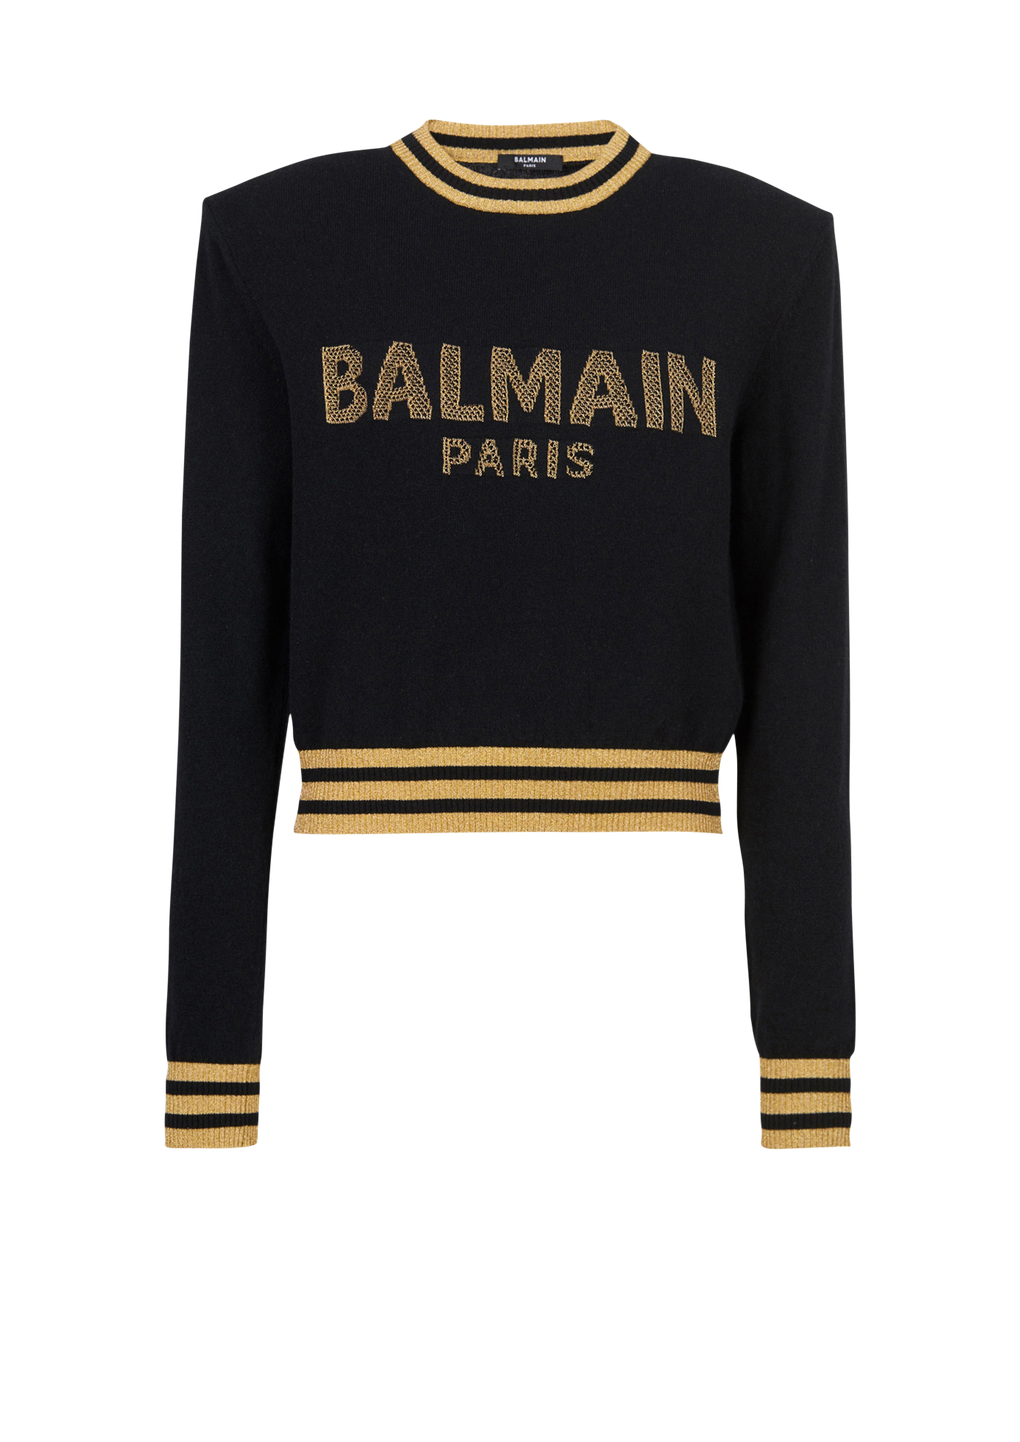 Cropped-Sweatshirt aus Wolle mit goldfarbenem Balmain Logo, schwarz, hi-res